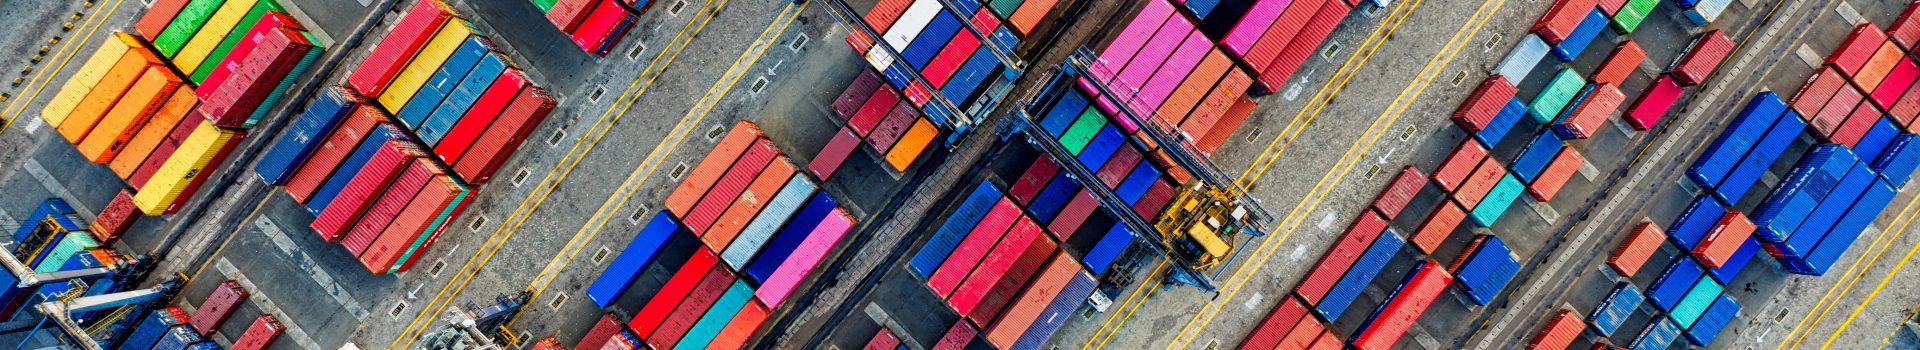 Container sind ein wichtiges Teil der weltweiten Lieferketten.